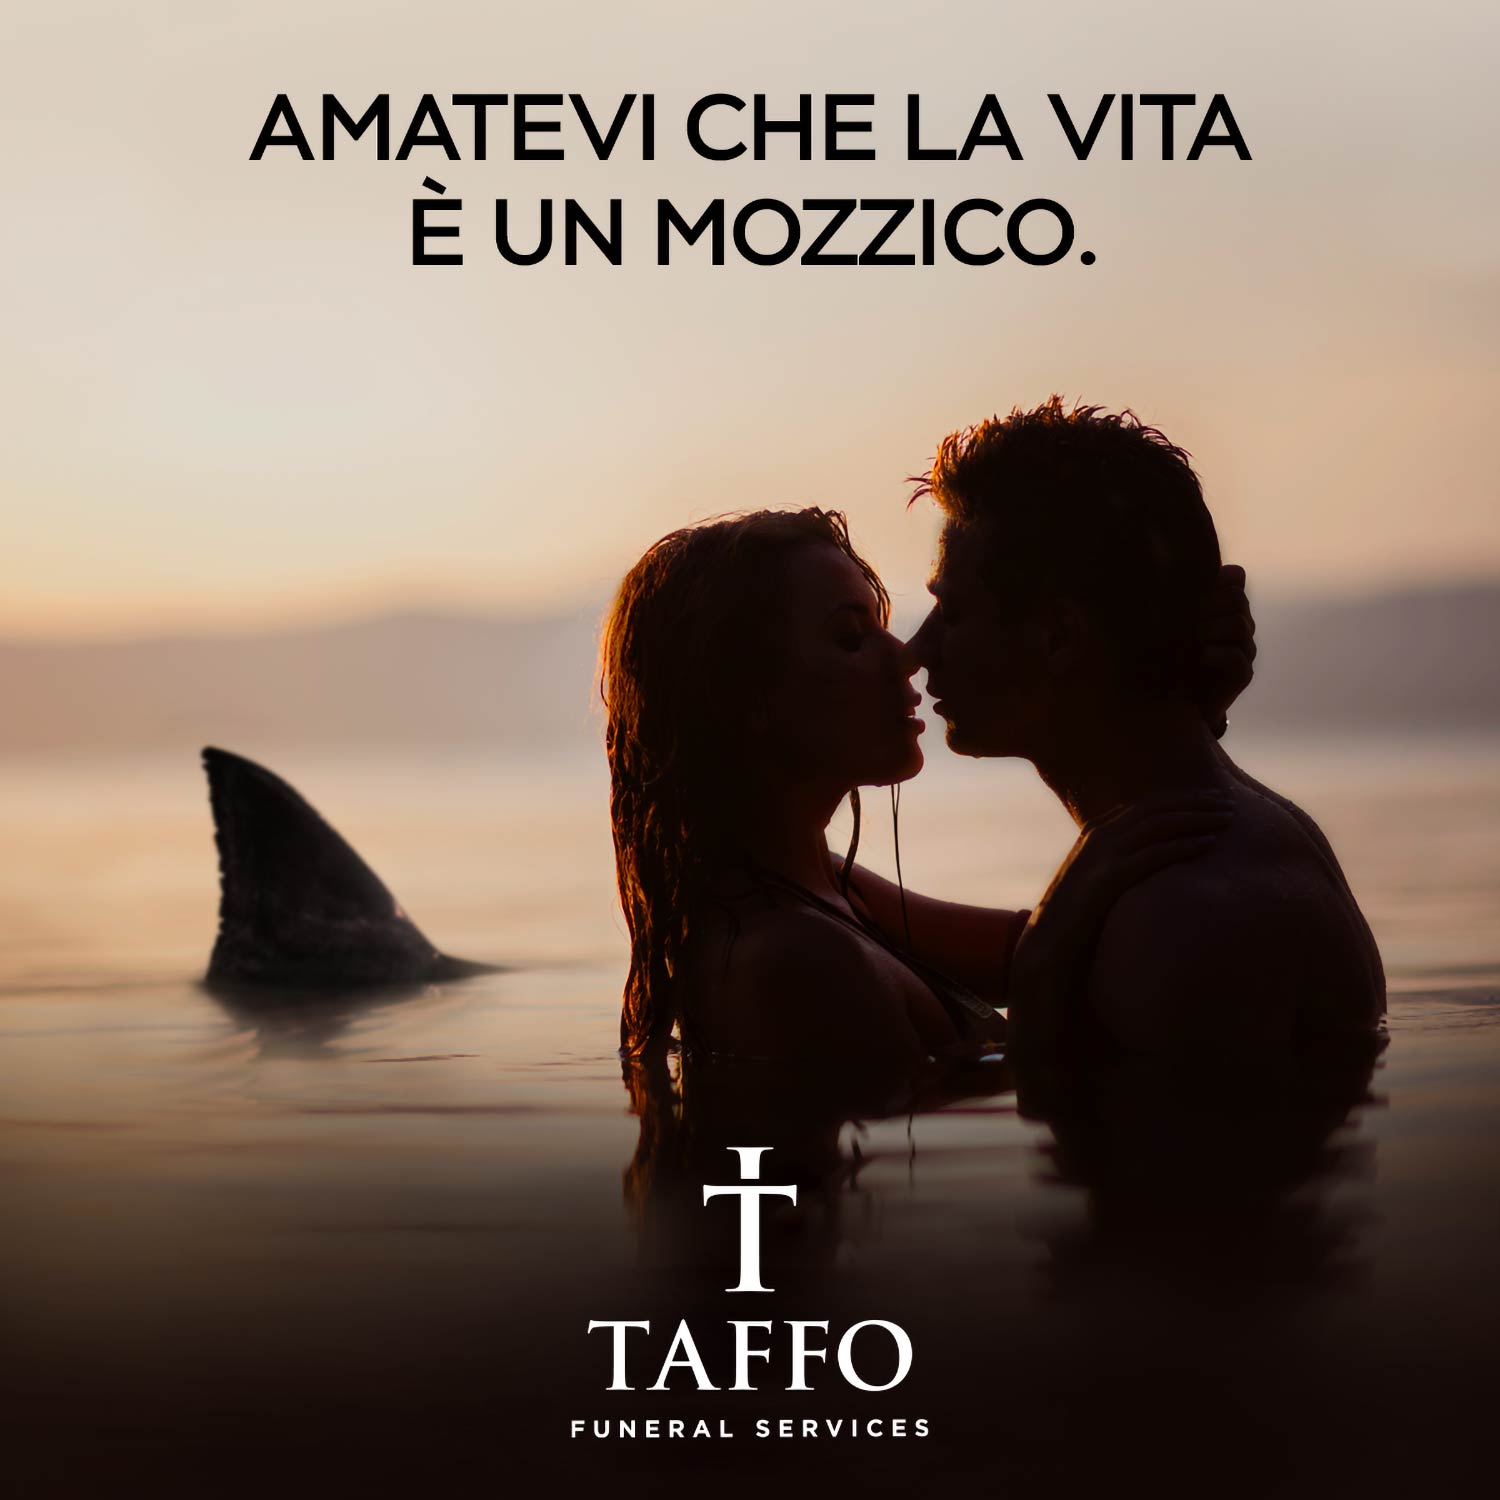 Un’immagine della campagna pubblicitaria di Taffo per San Valentino 2020 © kirweb/Simone Putignano/Riccardo Pirrone